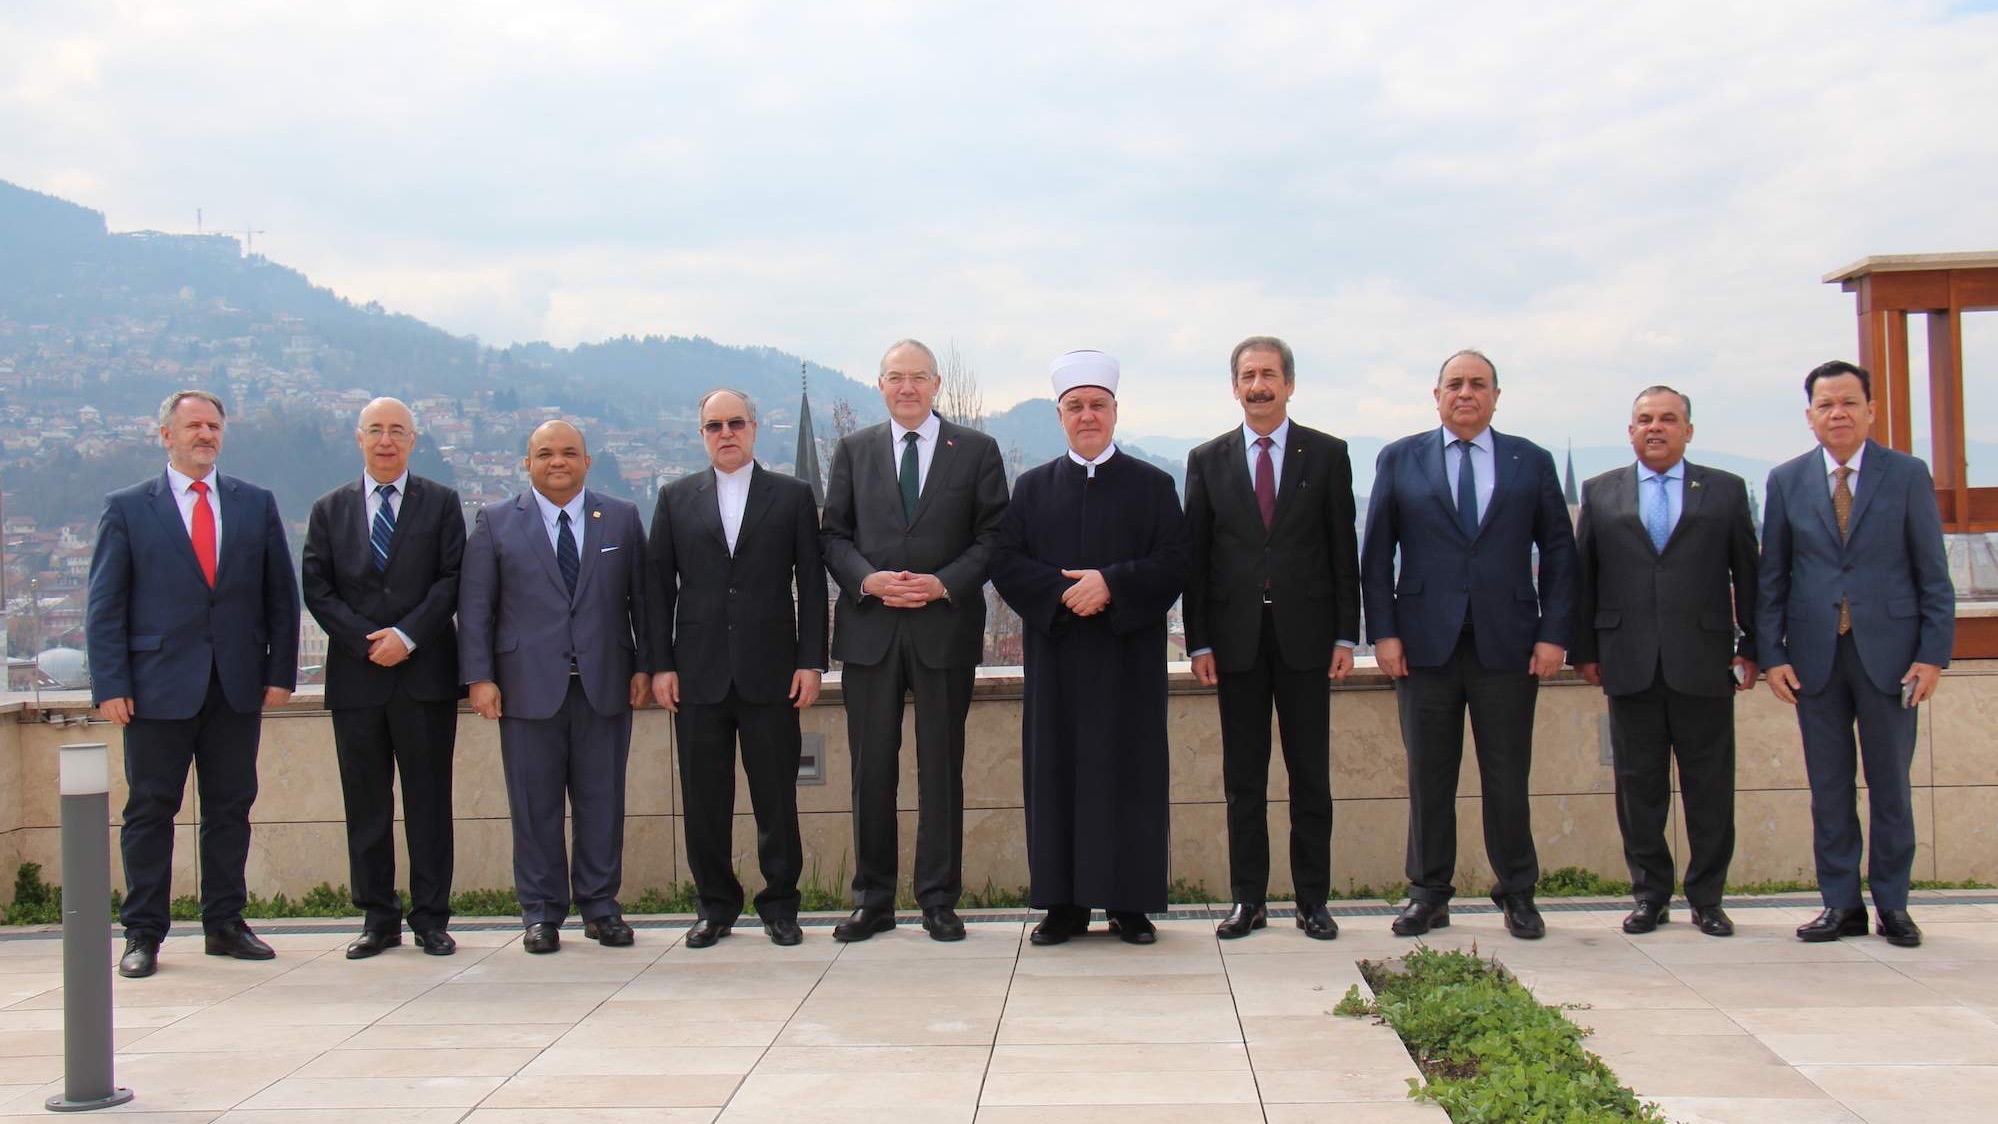 Reisul-ulemu posjetili ambasadori islamskih zemalja